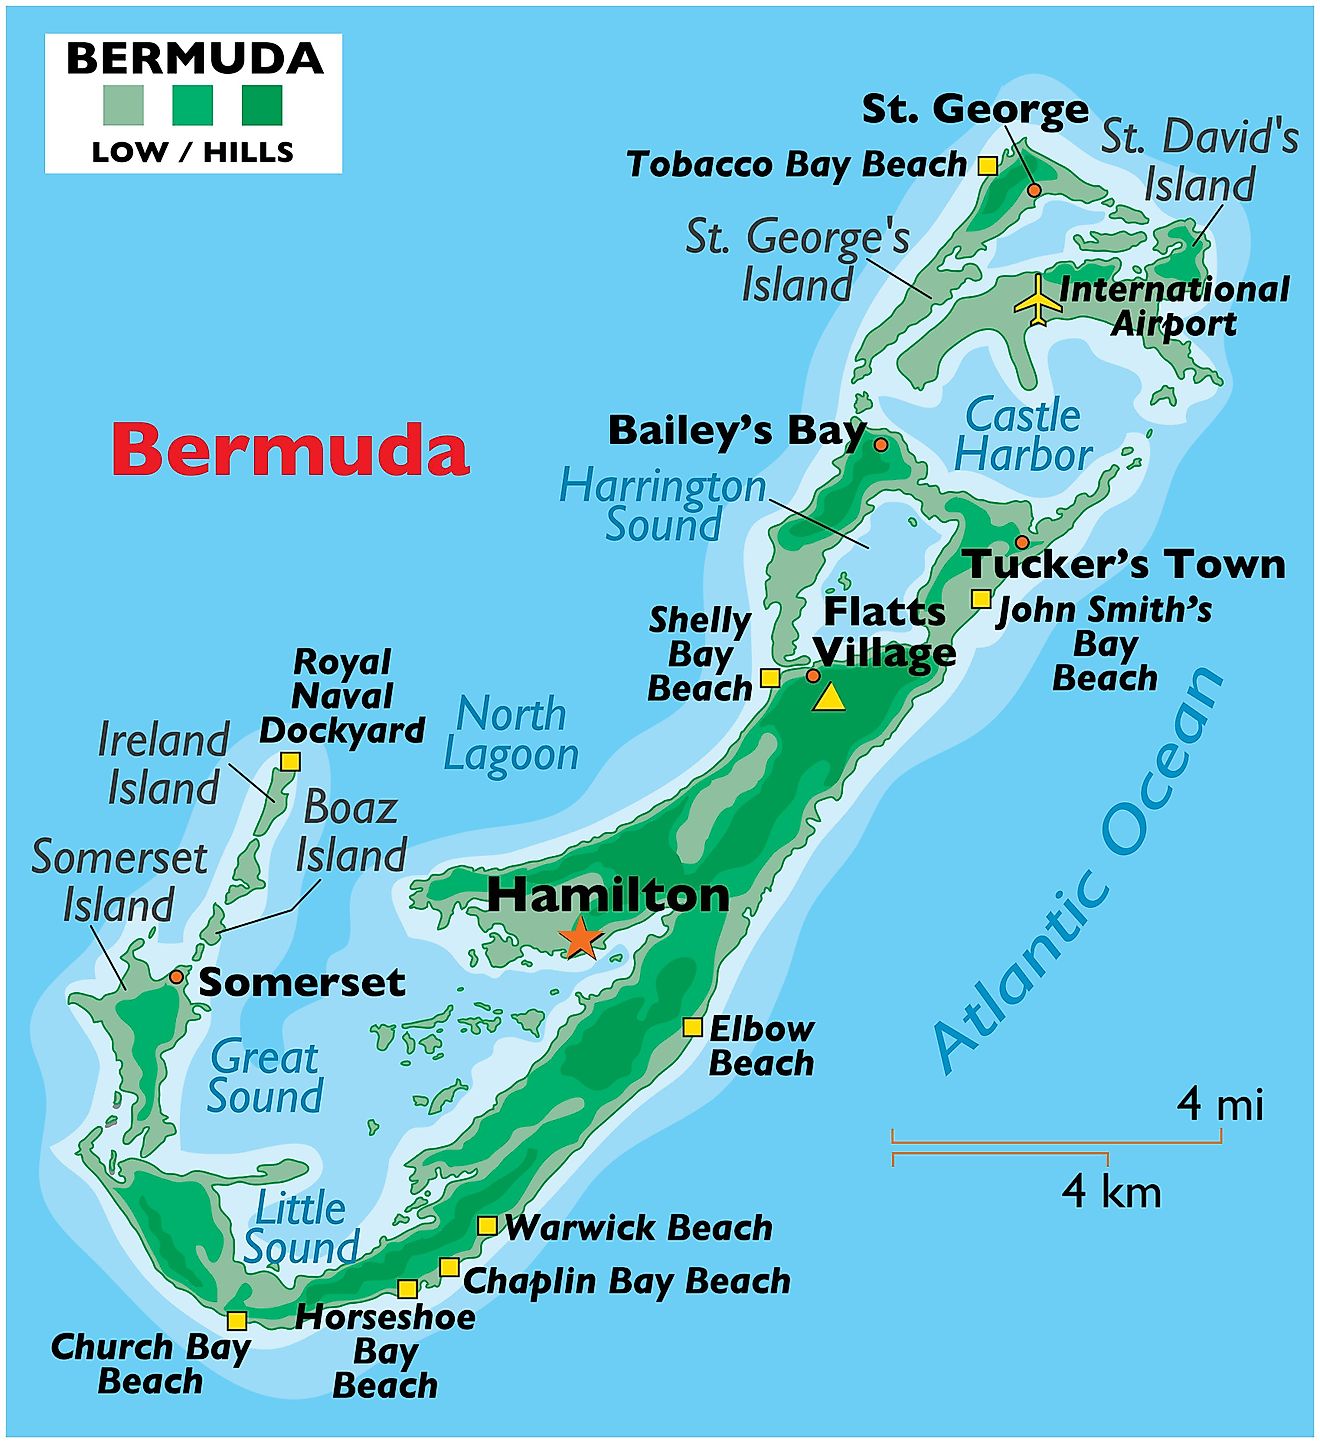 https://www.worldatlas.com/maps/bermuda